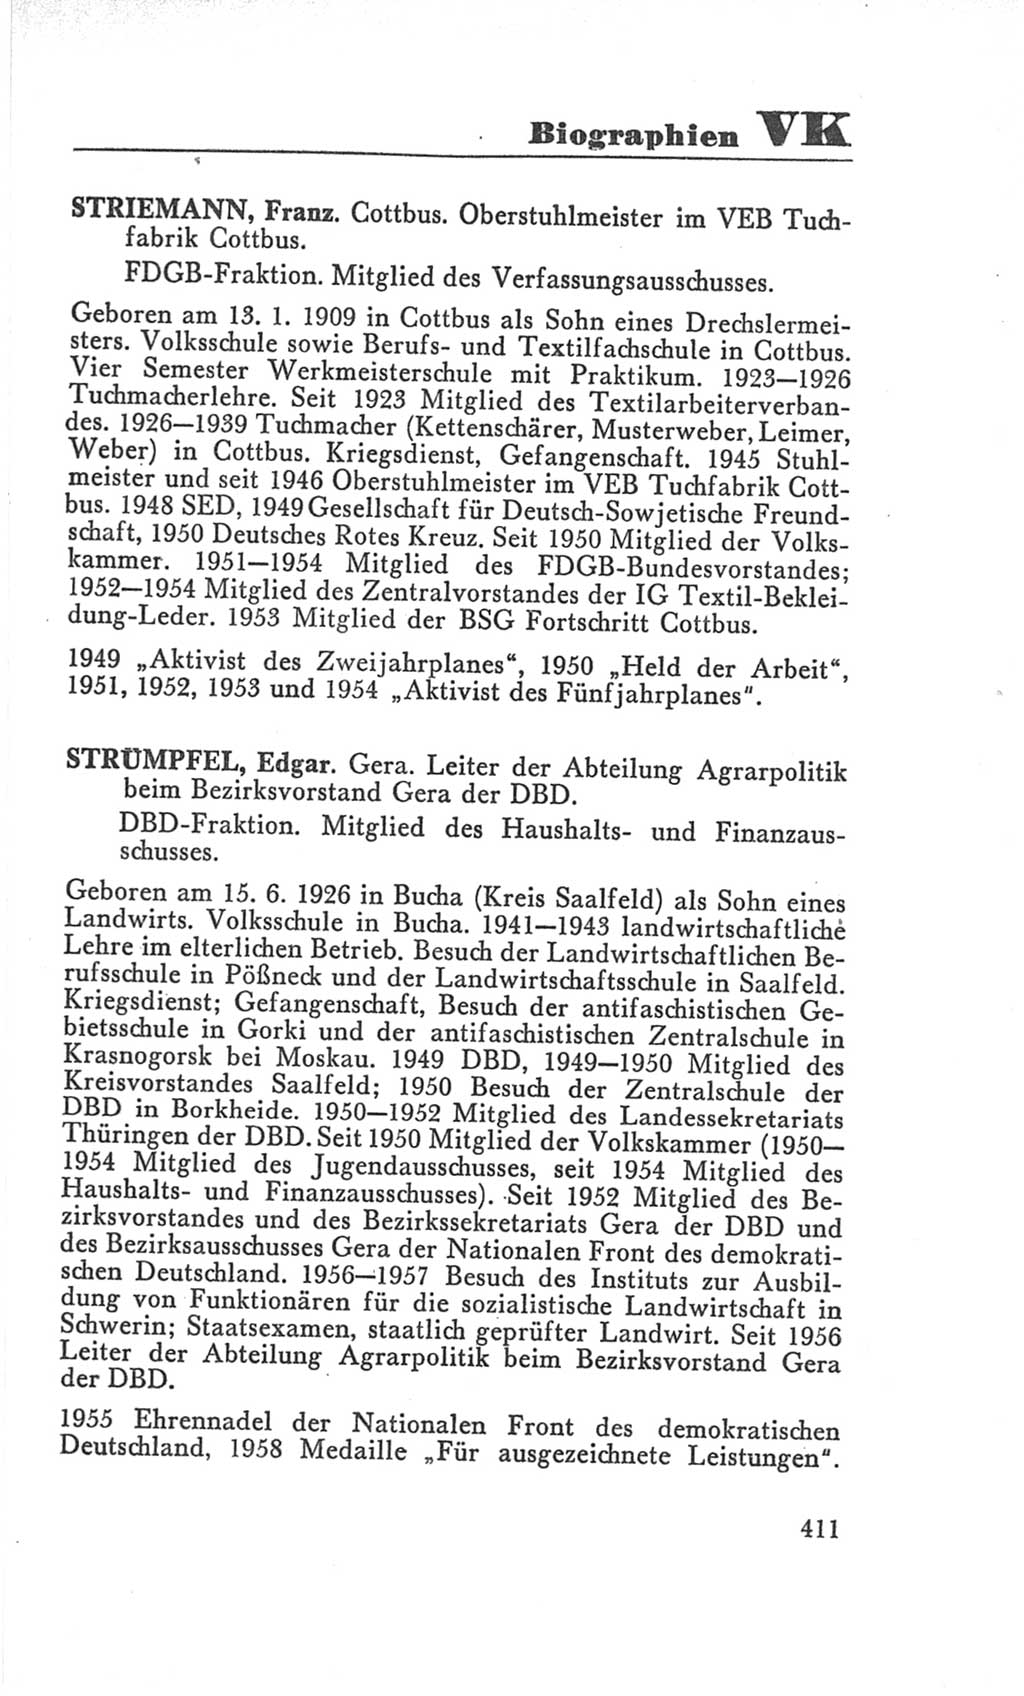 Handbuch der Volkskammer (VK) der Deutschen Demokratischen Republik (DDR), 3. Wahlperiode 1958-1963, Seite 411 (Hdb. VK. DDR 3. WP. 1958-1963, S. 411)